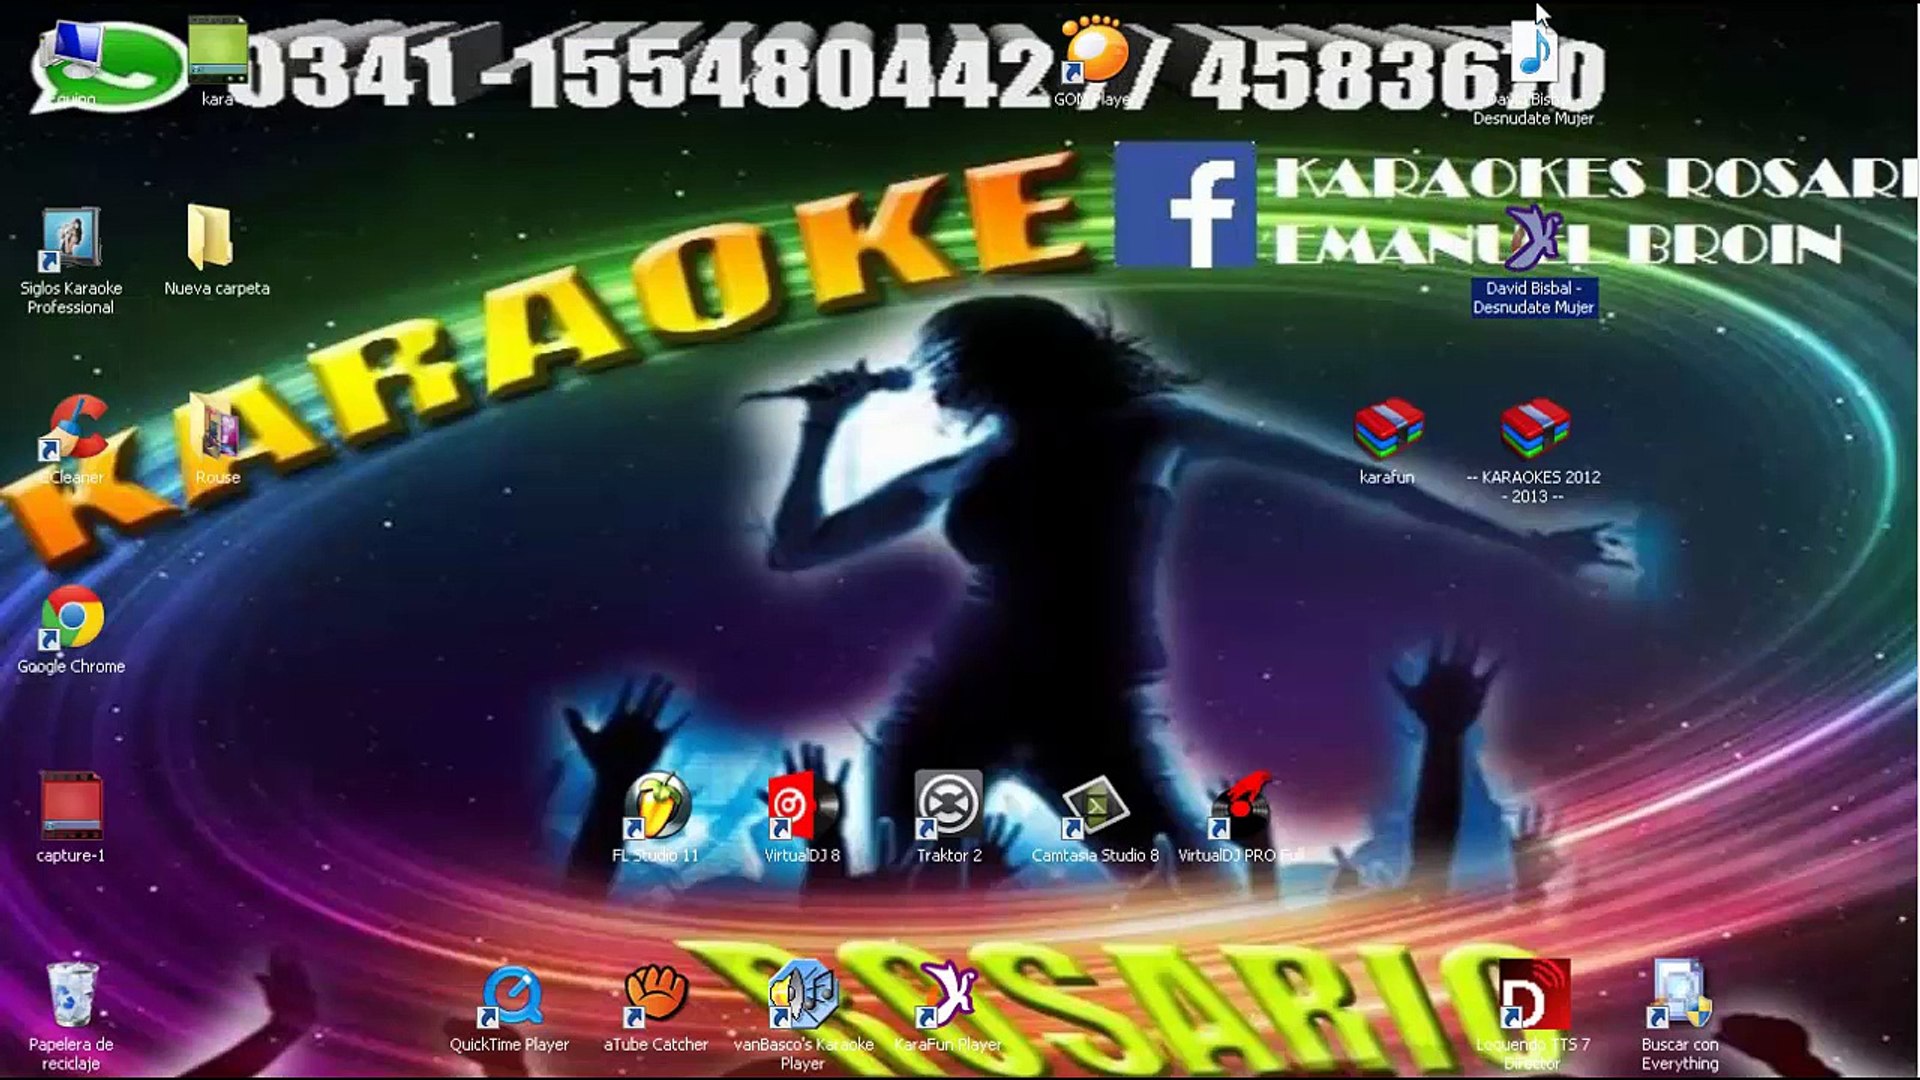 Karaoke Como camarón - Estopa - CDG, MP4, KFN - Versión Karaoke